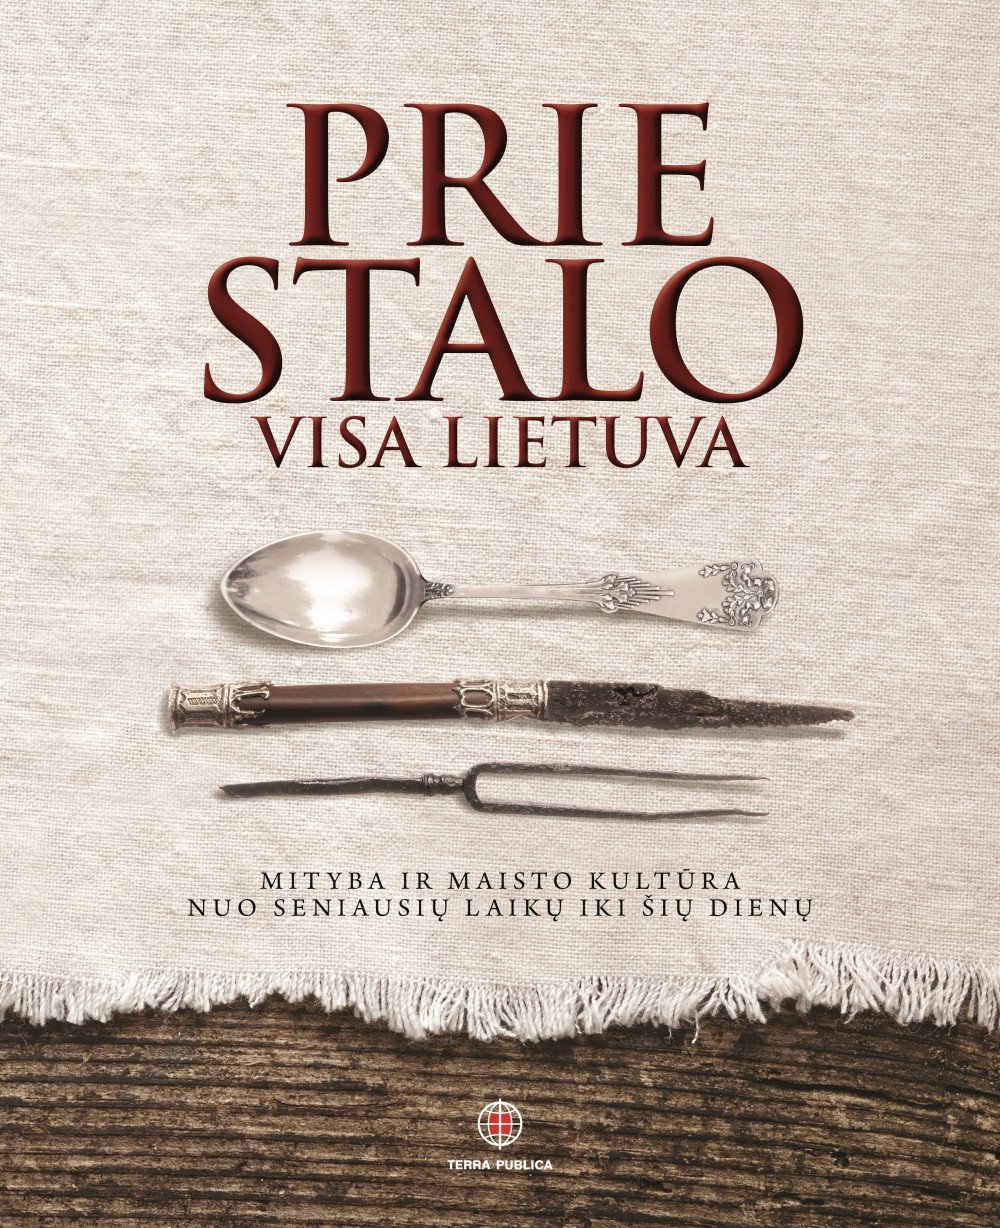 Tarpukario maisto revoliucija: ištrauka iš knygos “Prie stalo visa Lietuva”